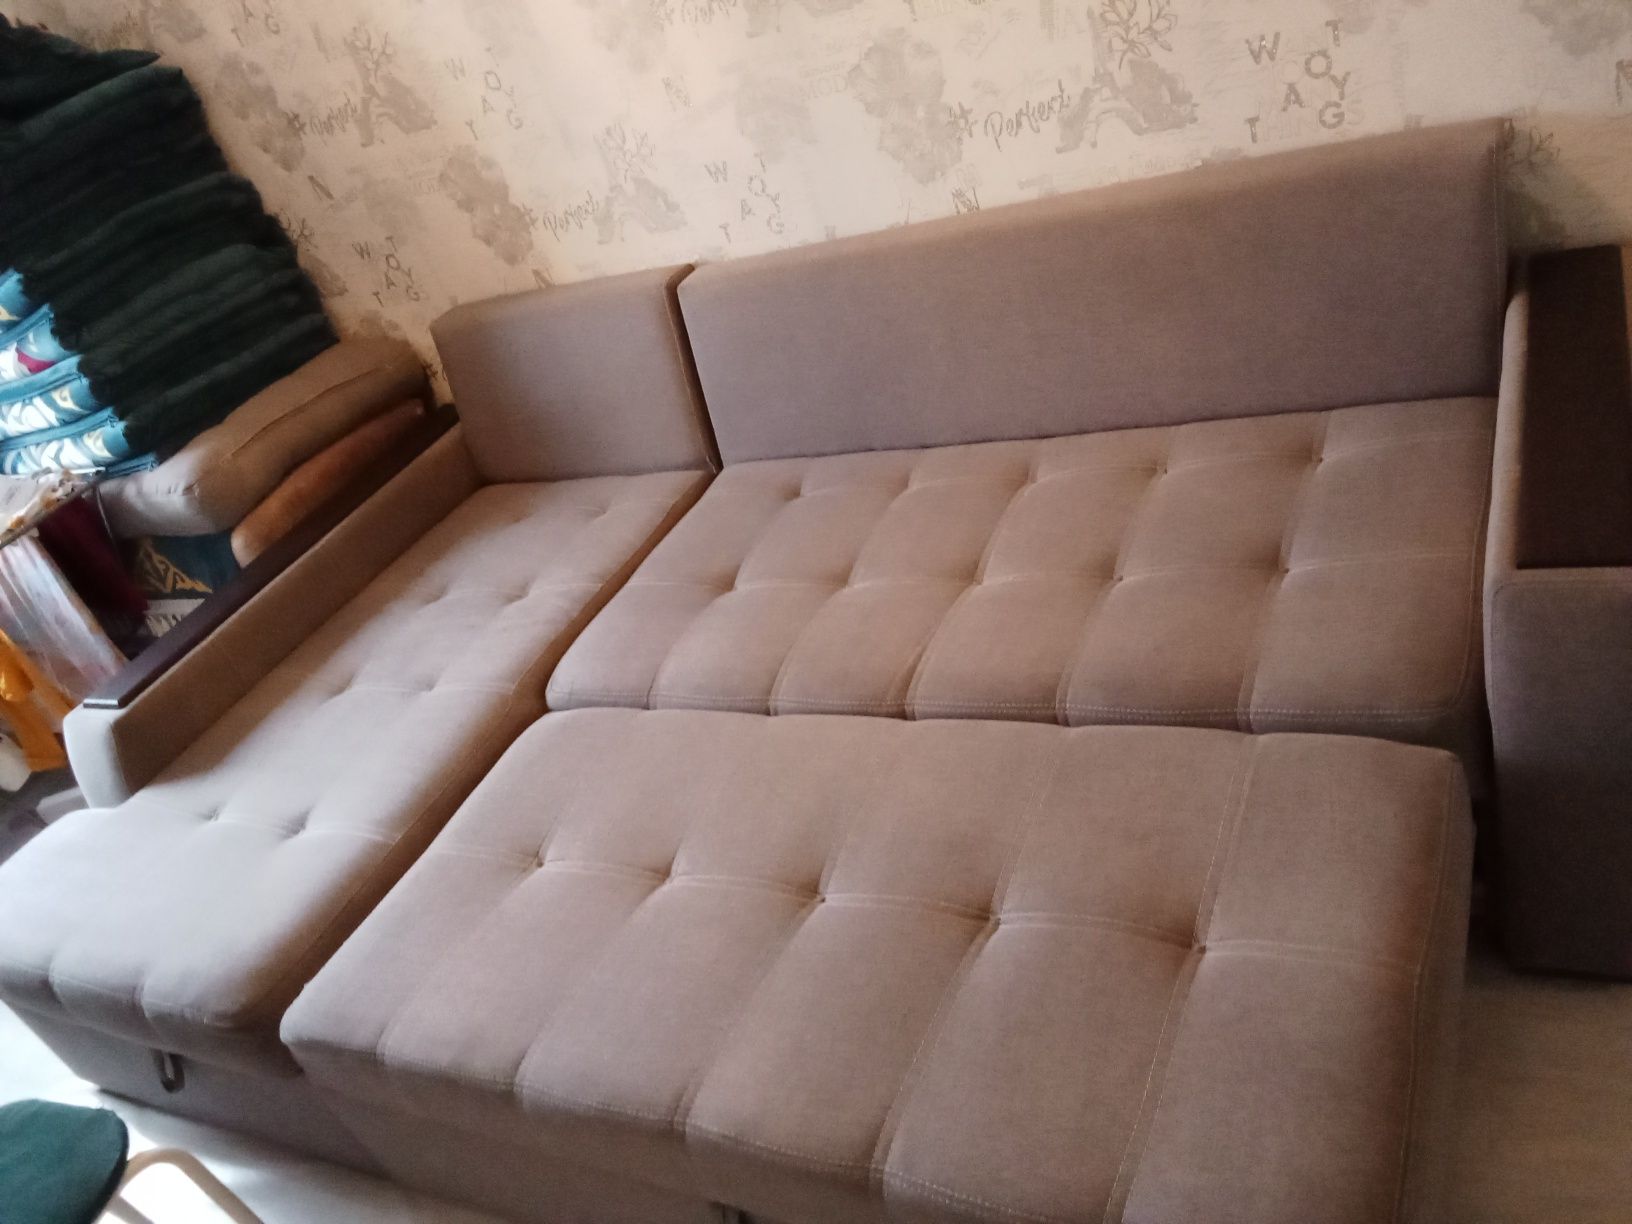 Уголовой диван с креслом
mebelko.kz
0
КАТЕГОРИИ
Главная » Каталог » Мя